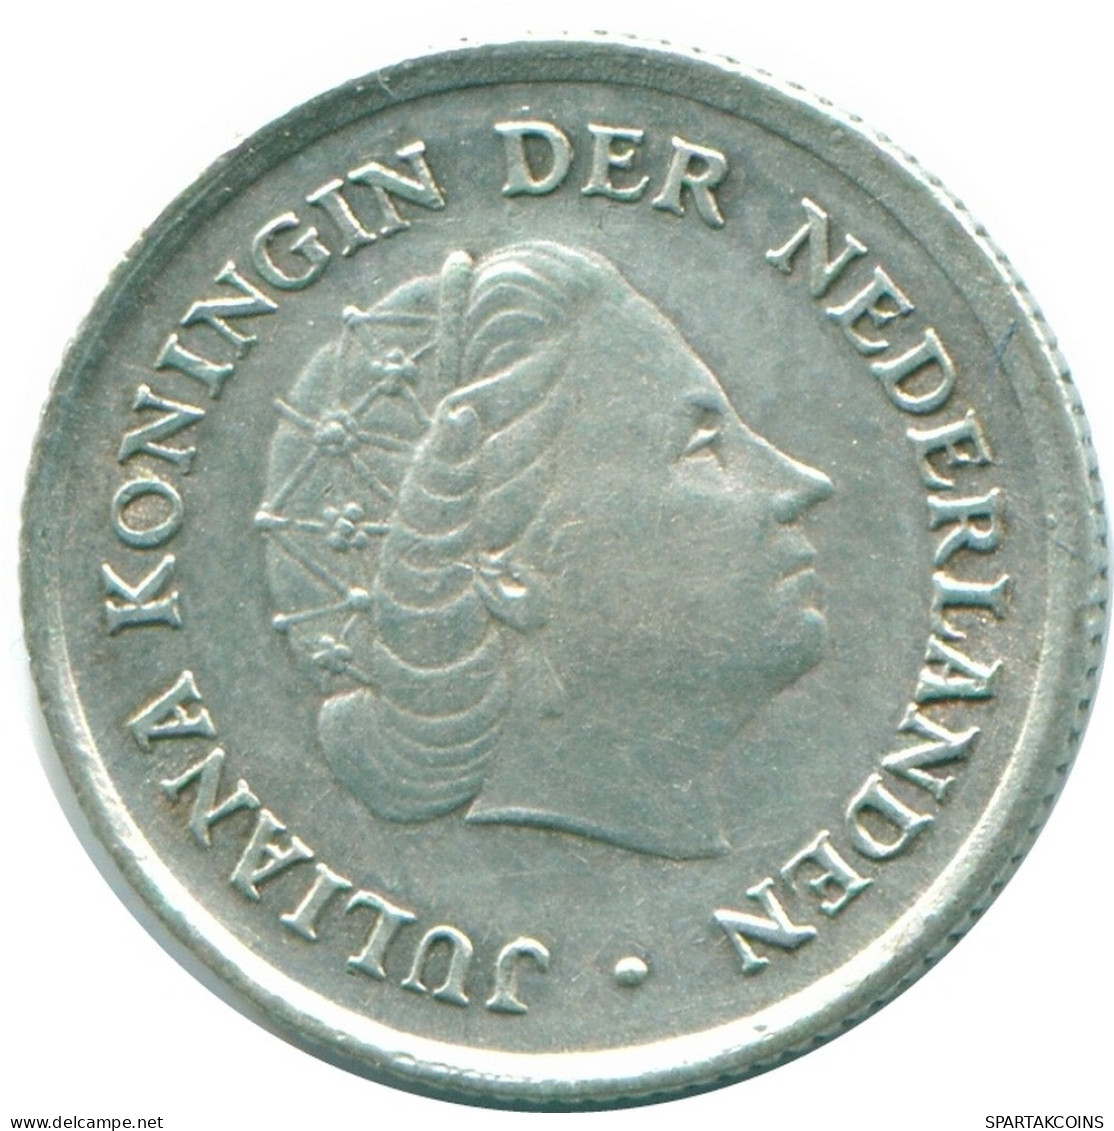 1/10 GULDEN 1962 NIEDERLÄNDISCHE ANTILLEN SILBER Koloniale Münze #NL12364.3.D.A - Antilles Néerlandaises